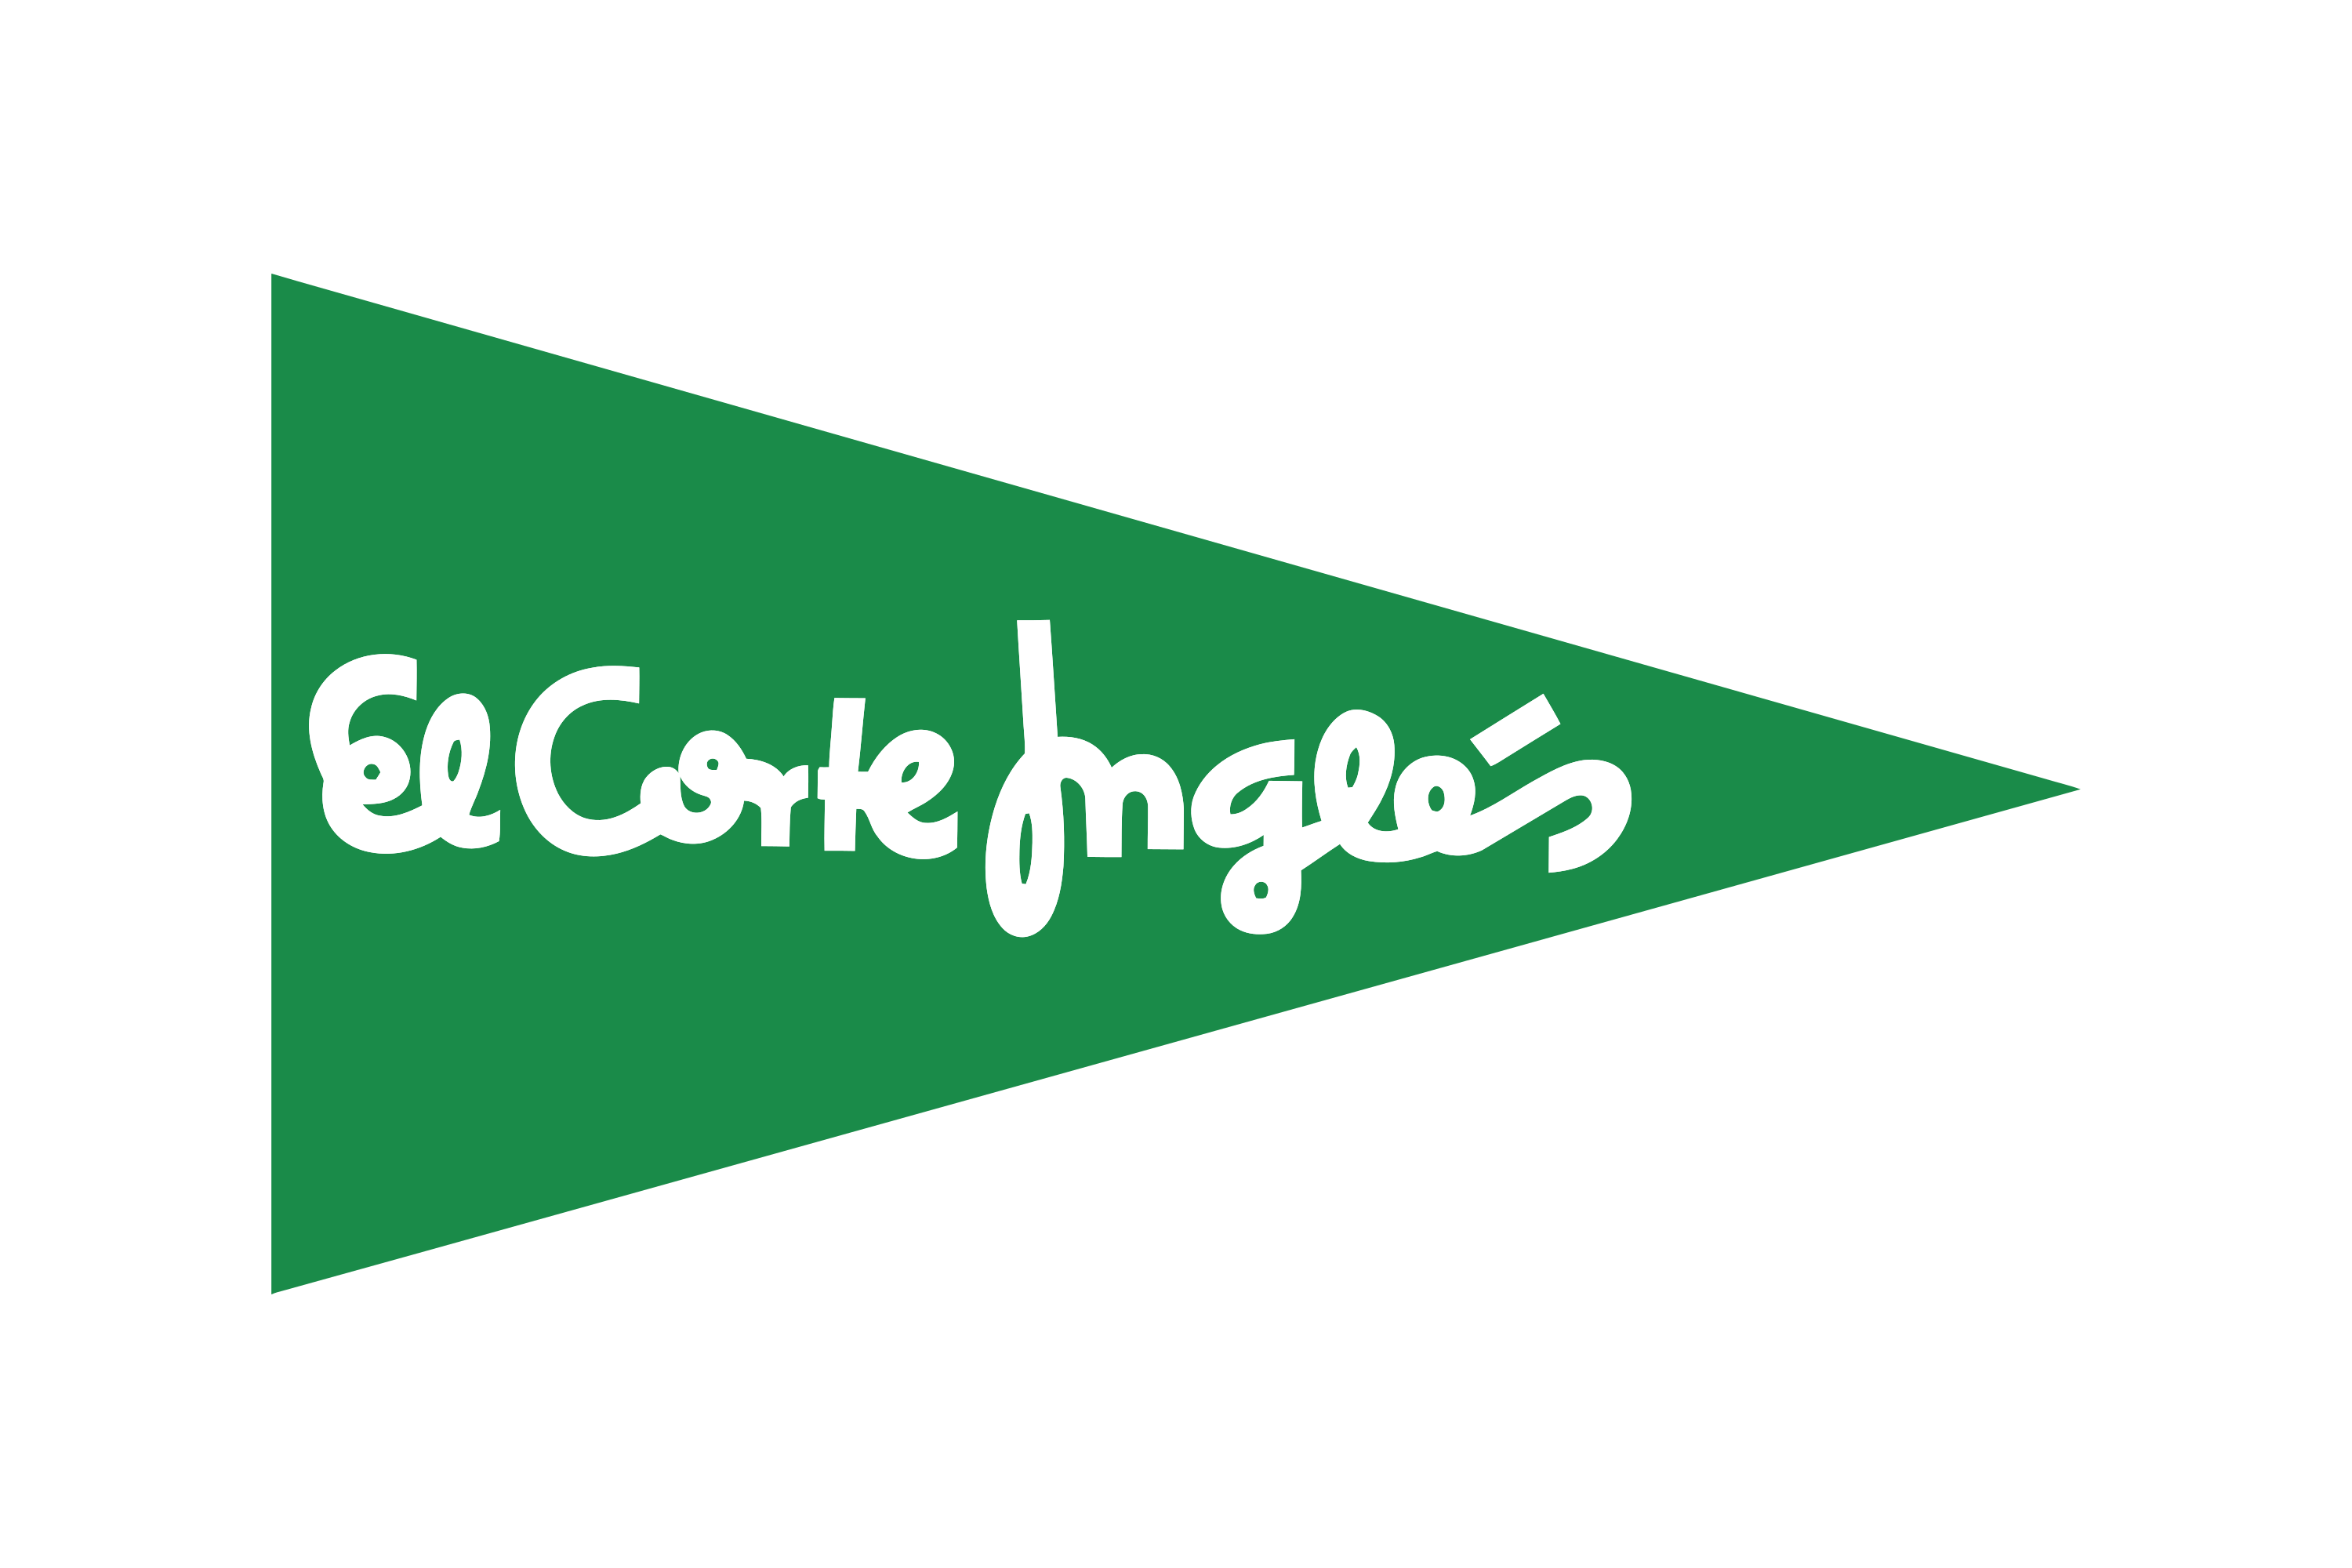 Download El Corte Inglés Logo in SVG Vector or PNG File Format - Logo.wine